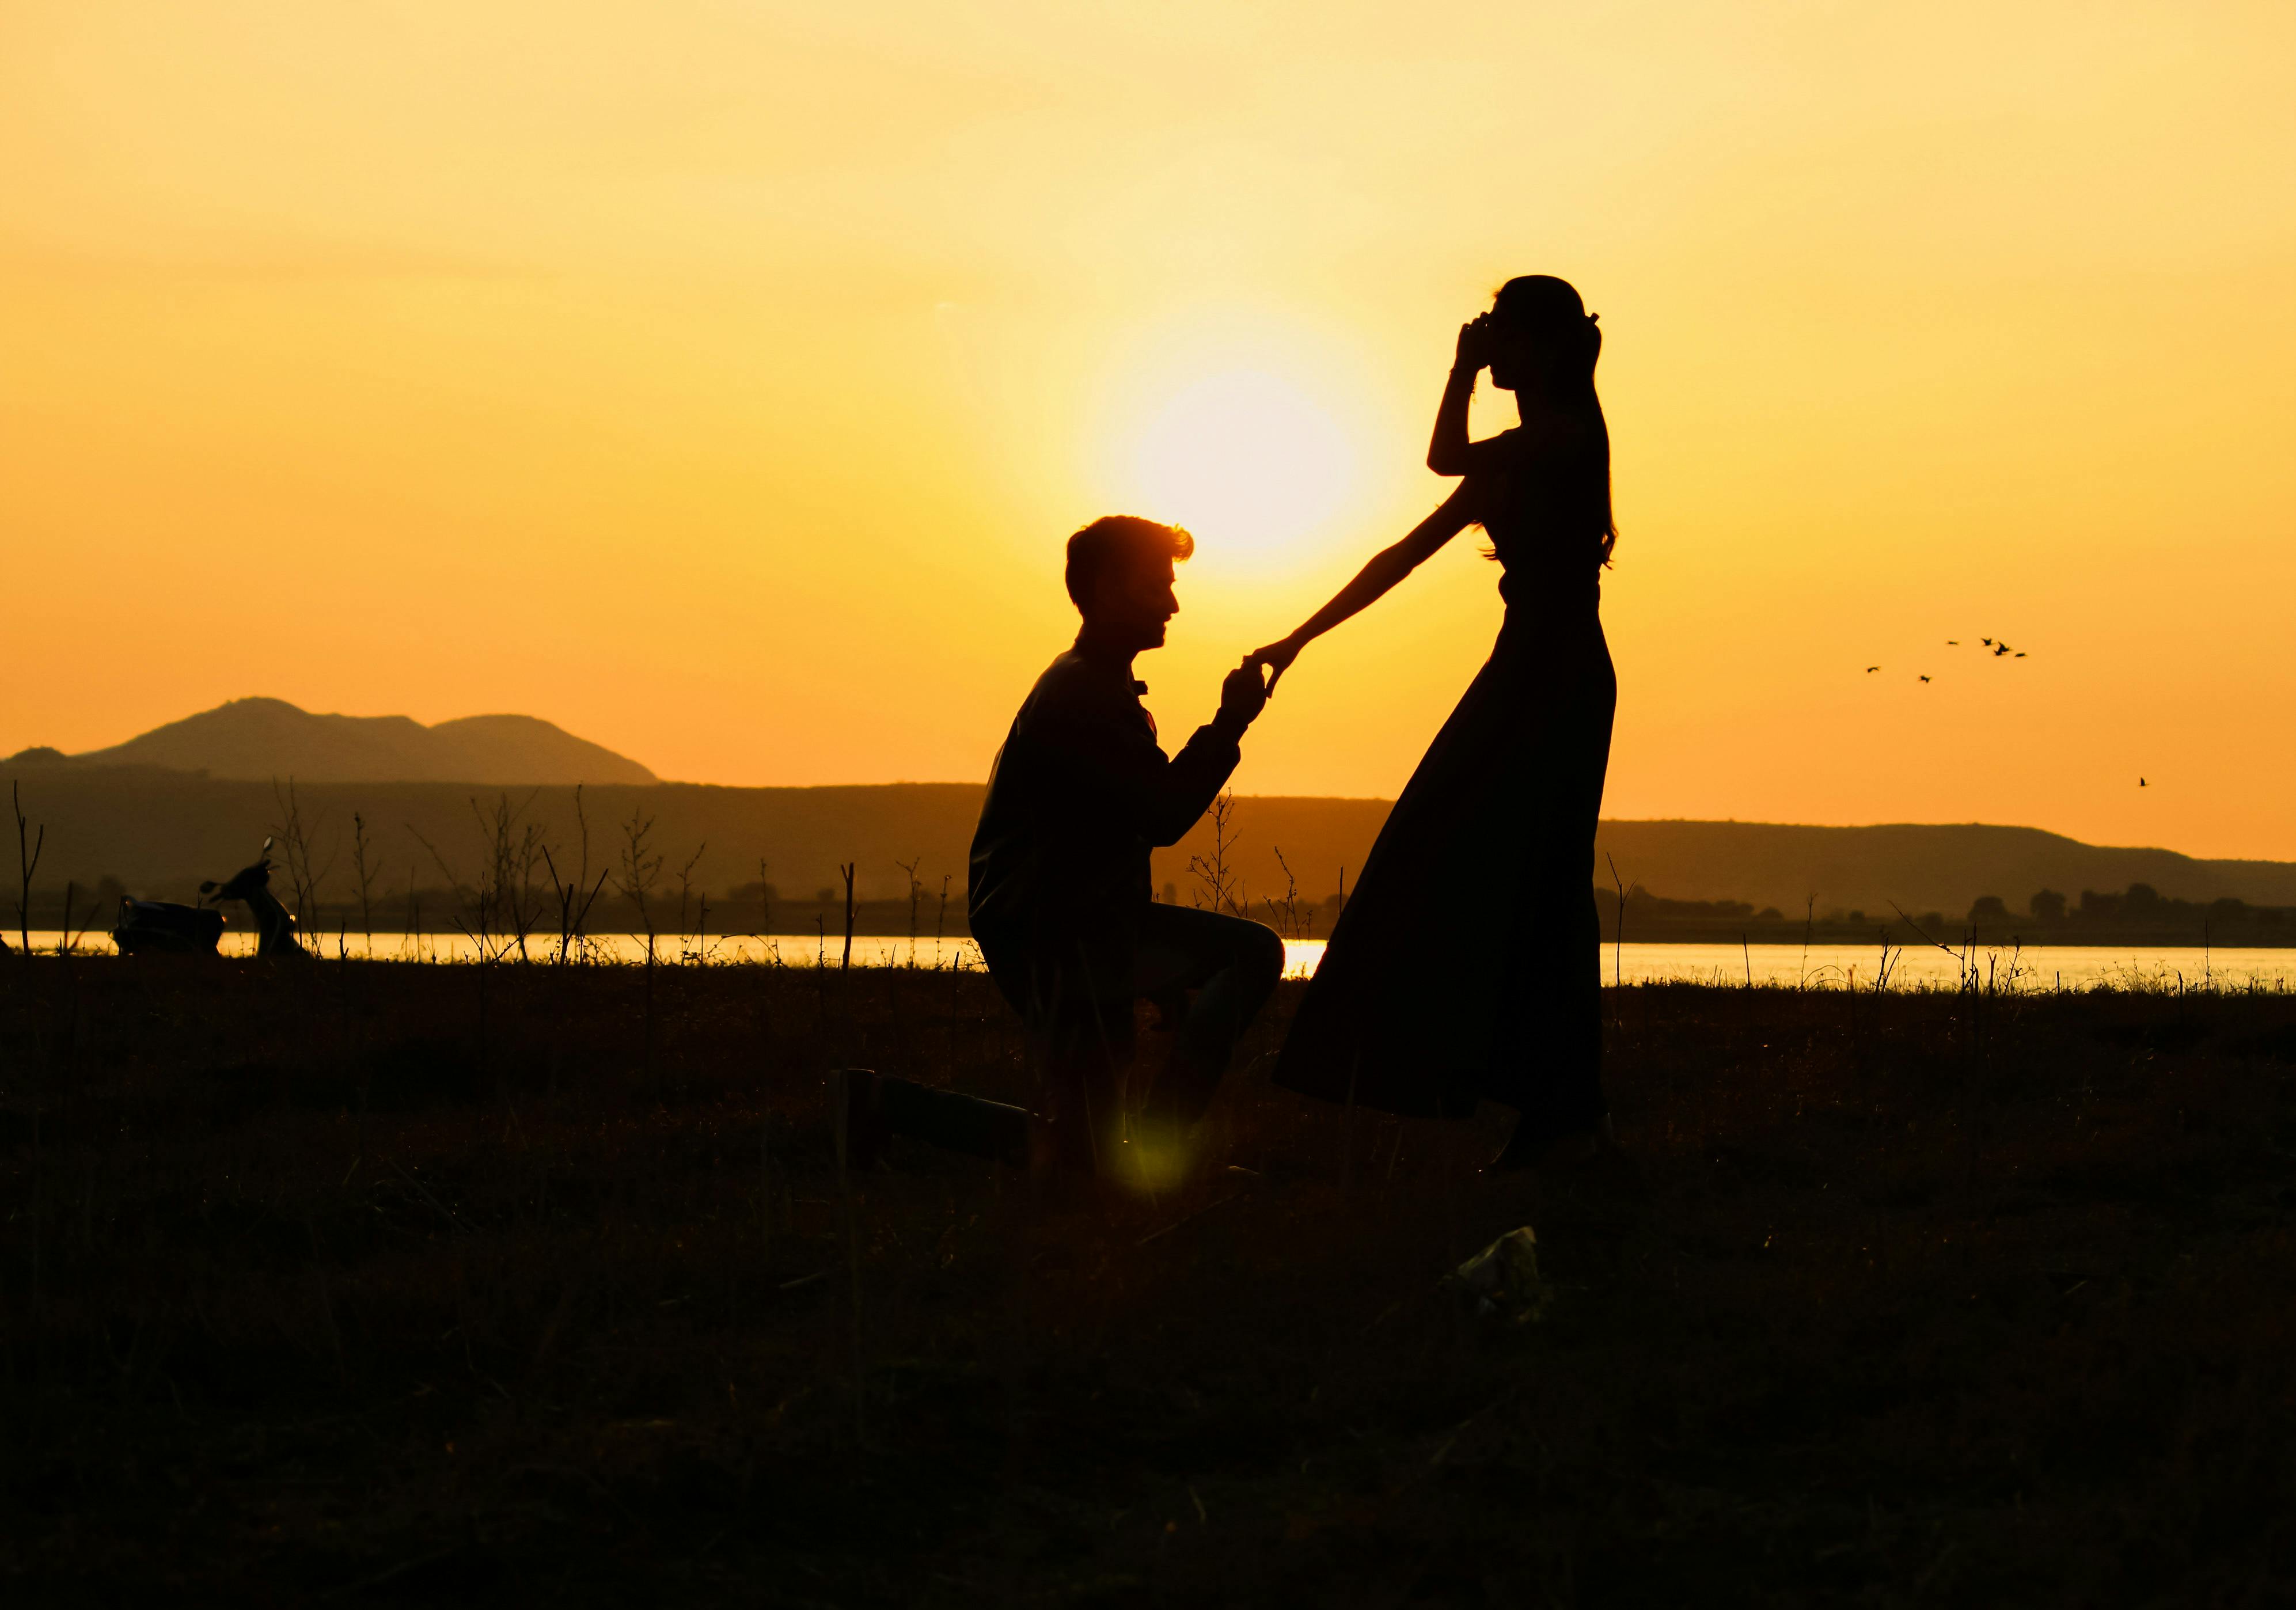 Un homme demande une femme en mariage sur la plage | Source : Pexels